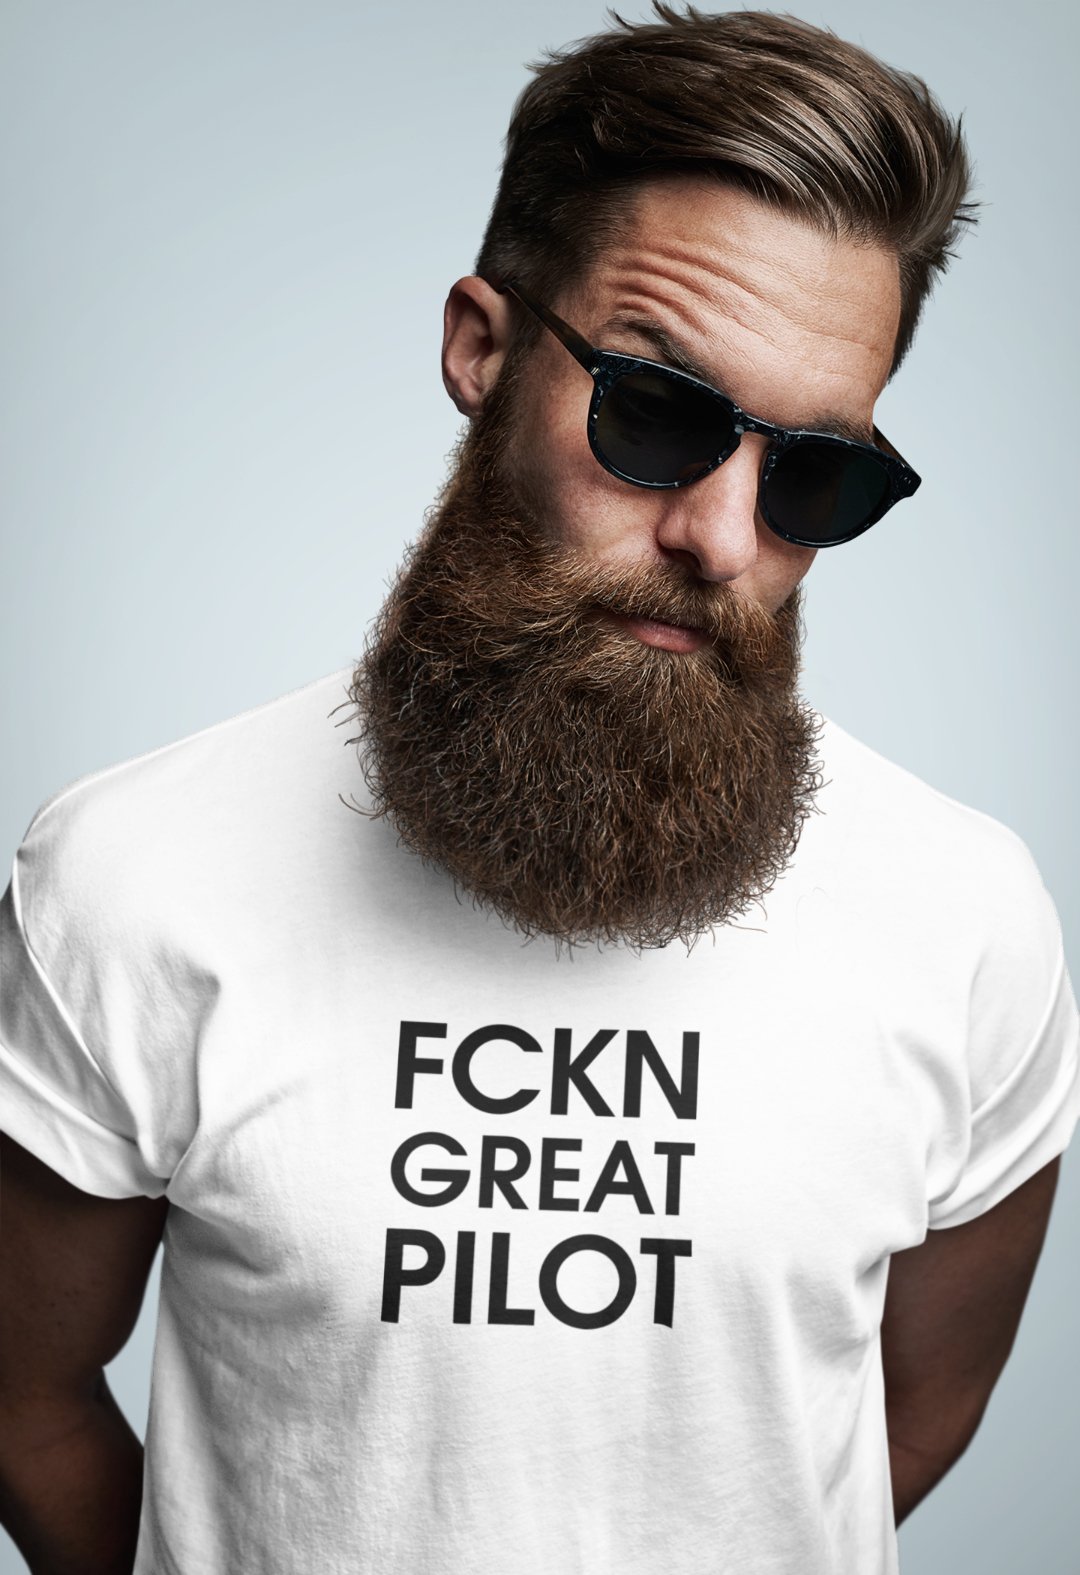 Fckn Great Pilot T-Shirt - 25center.com